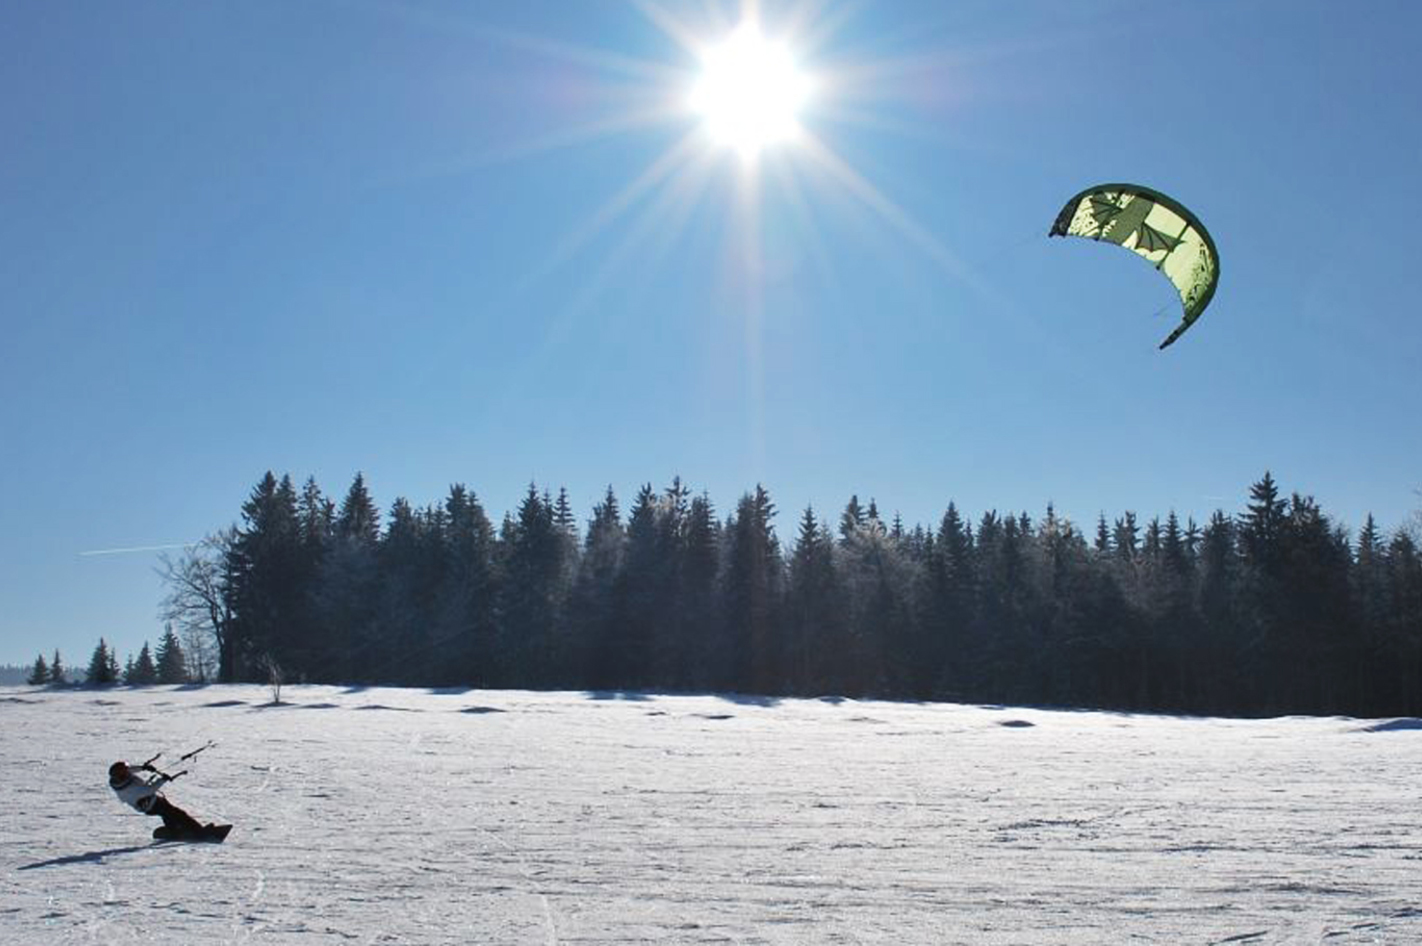 Snowkite-Kurs mit 2 Übernachtungen – Frischer Wind für Wintersport-Fans!